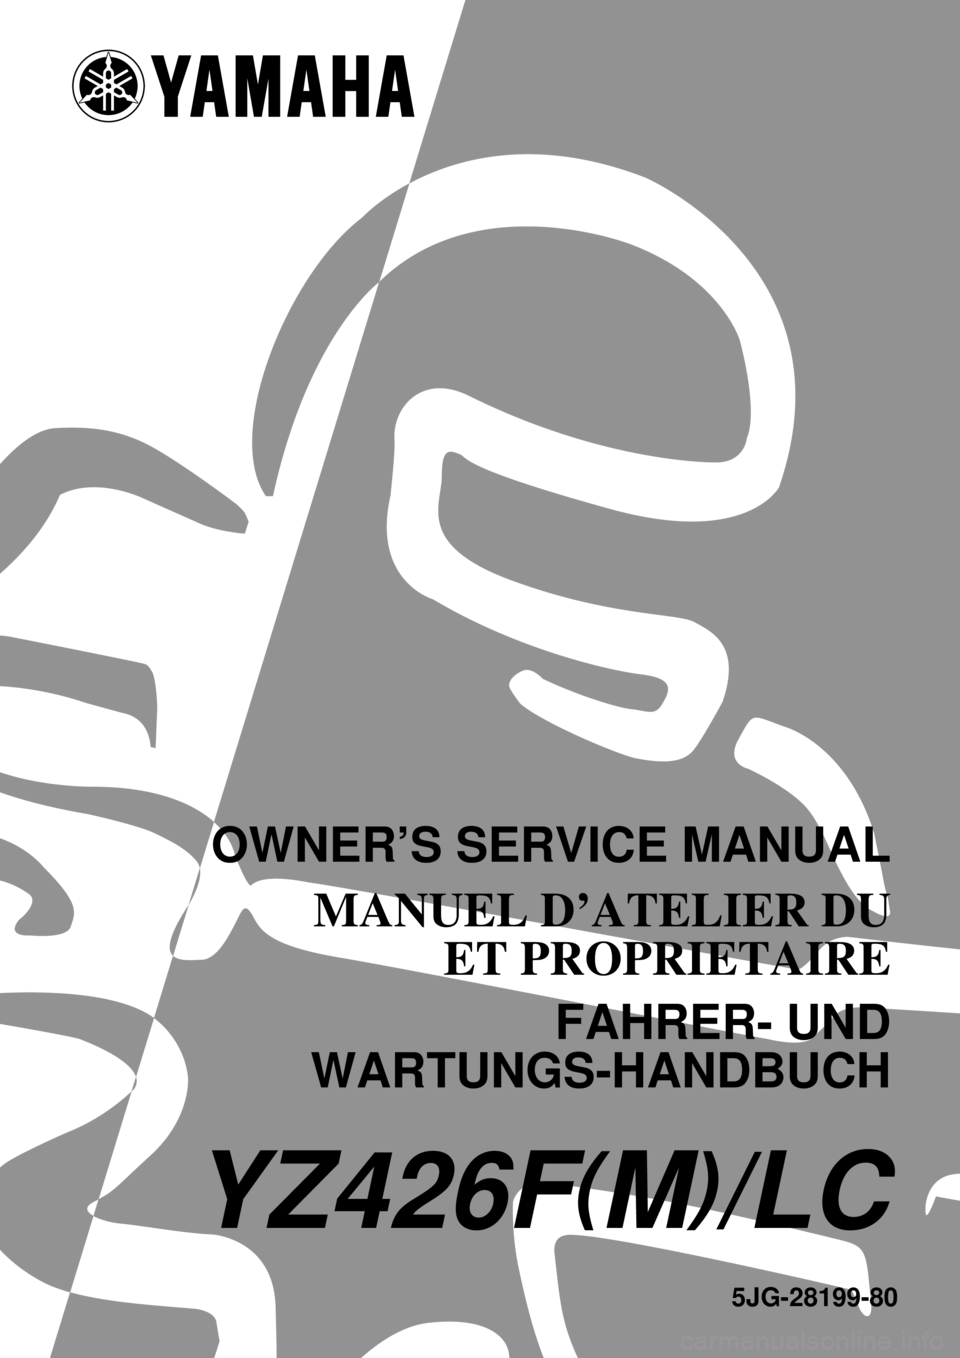 YAMAHA YZ426F 2000  Betriebsanleitungen (in German) 5JG-28199-80
YZ426F(M)/LC
OWNER’S SERVICE MANUAL
MANUEL D’ATELIER DU
ET PROPRIETAIRE
FAHRER- UND
WARTUNGS-HANDBUCH 